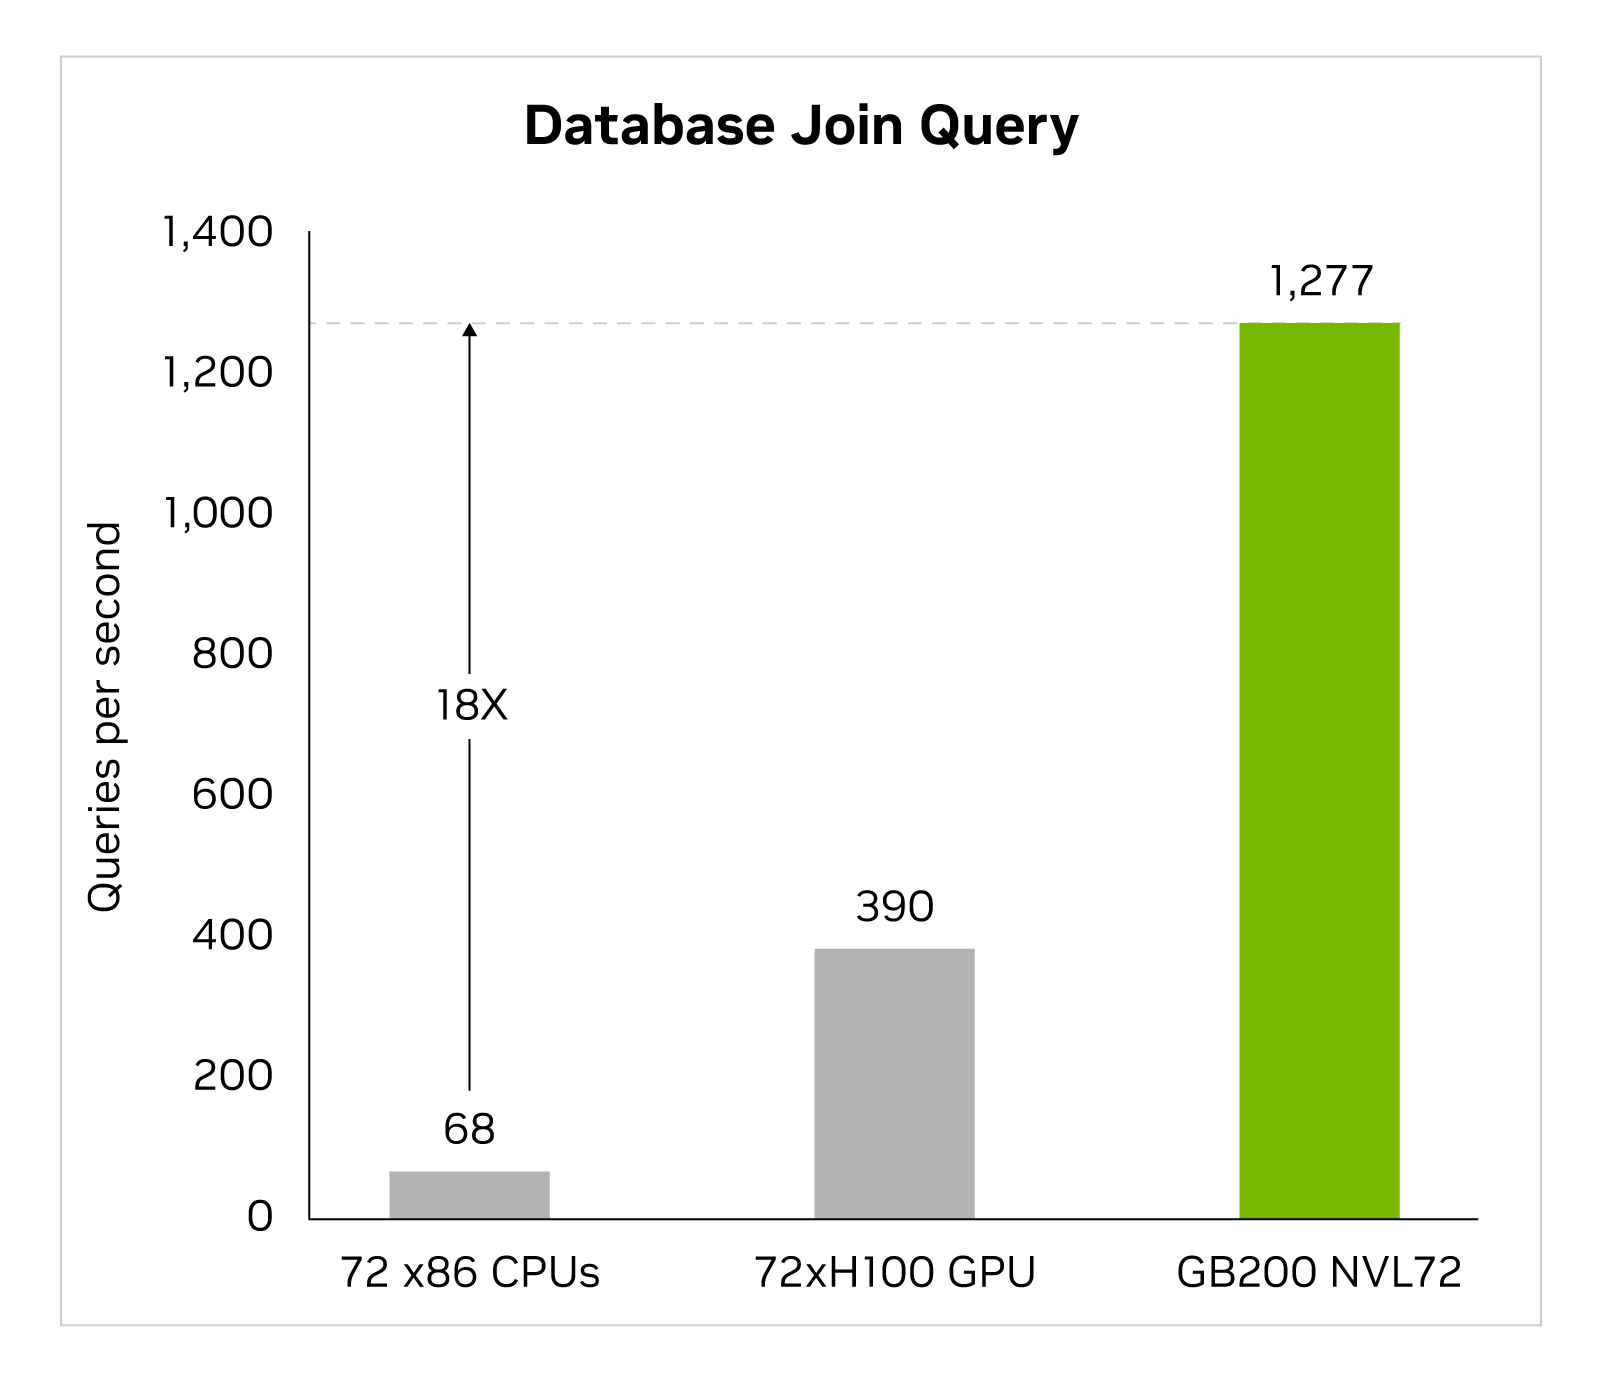 X86, H100, GB200 için saniye başına sorguları karşılaştıran 3 sütunlu çubuk grafik. 72 x86, 68'dir, 72xH100, 390'dır ve GB200 NVL72, 1277'dir; x86'dan 18 kat daha fazladır.